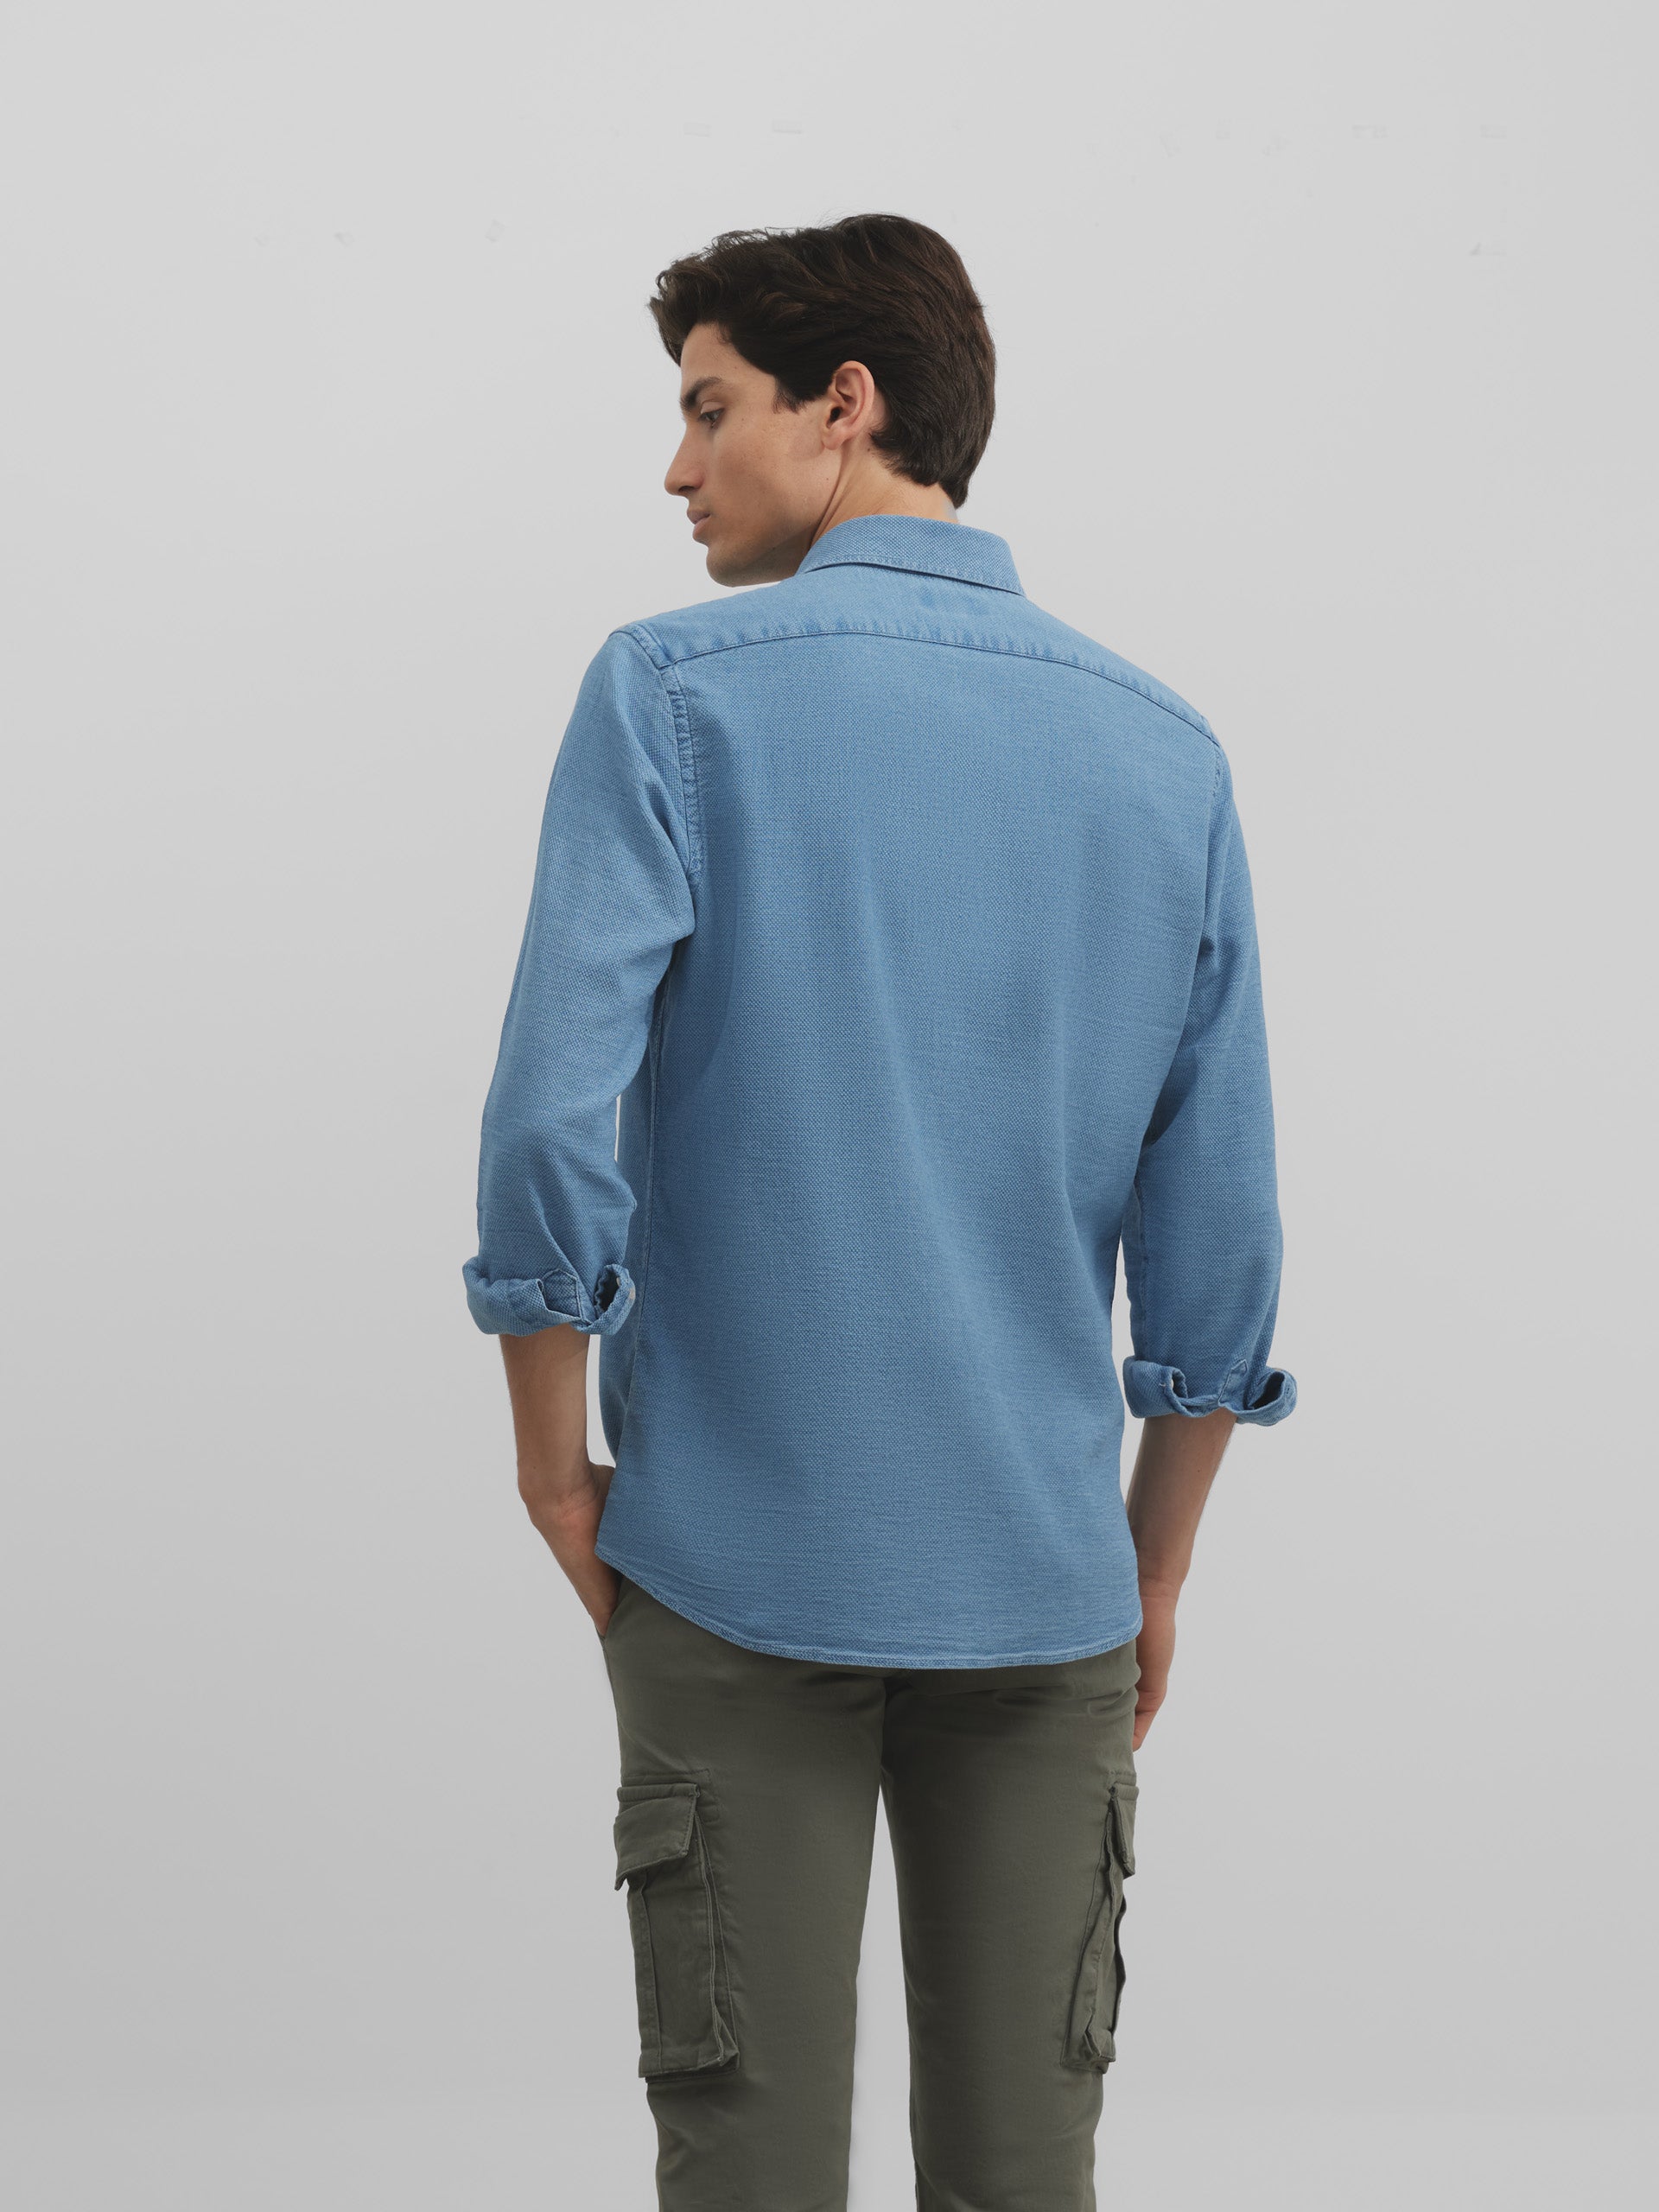 Light blue denim structured sport shirt